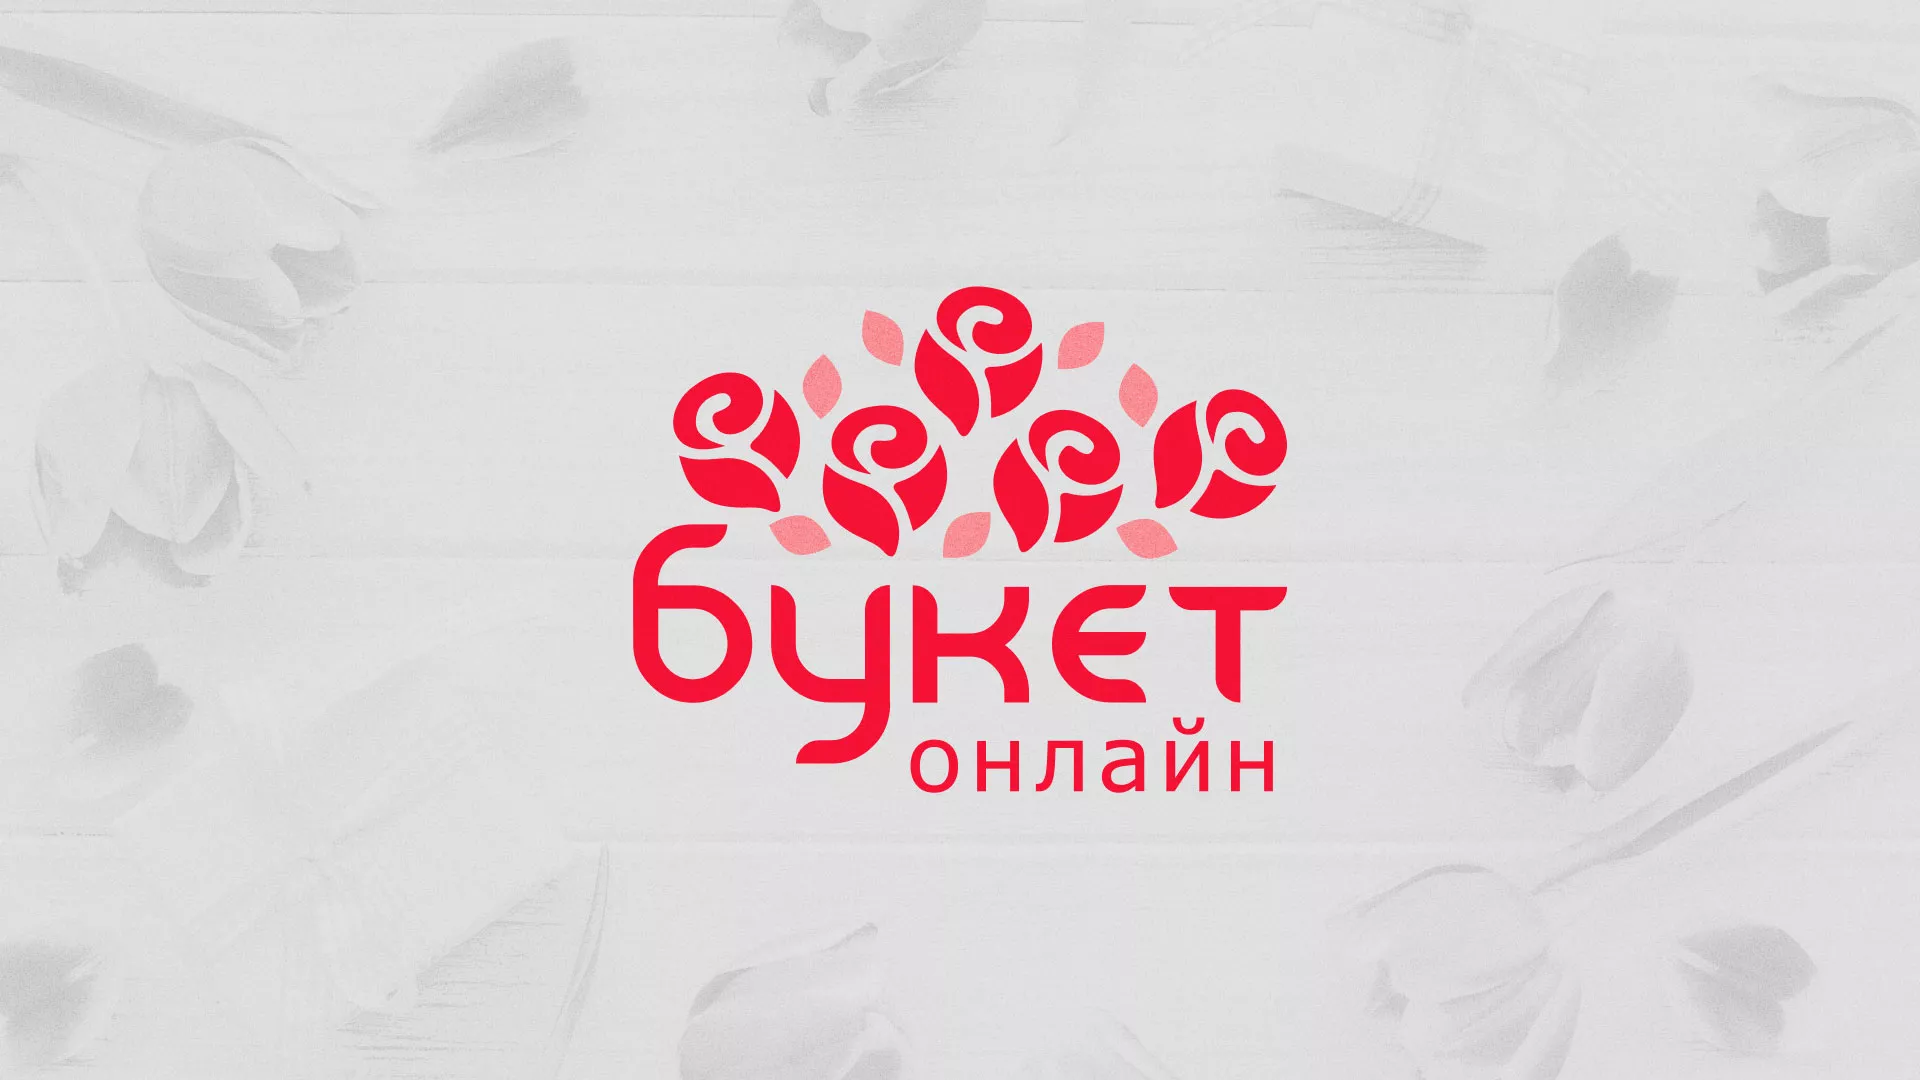 Создание интернет-магазина «Букет-онлайн» по цветам в Сольвычегодске